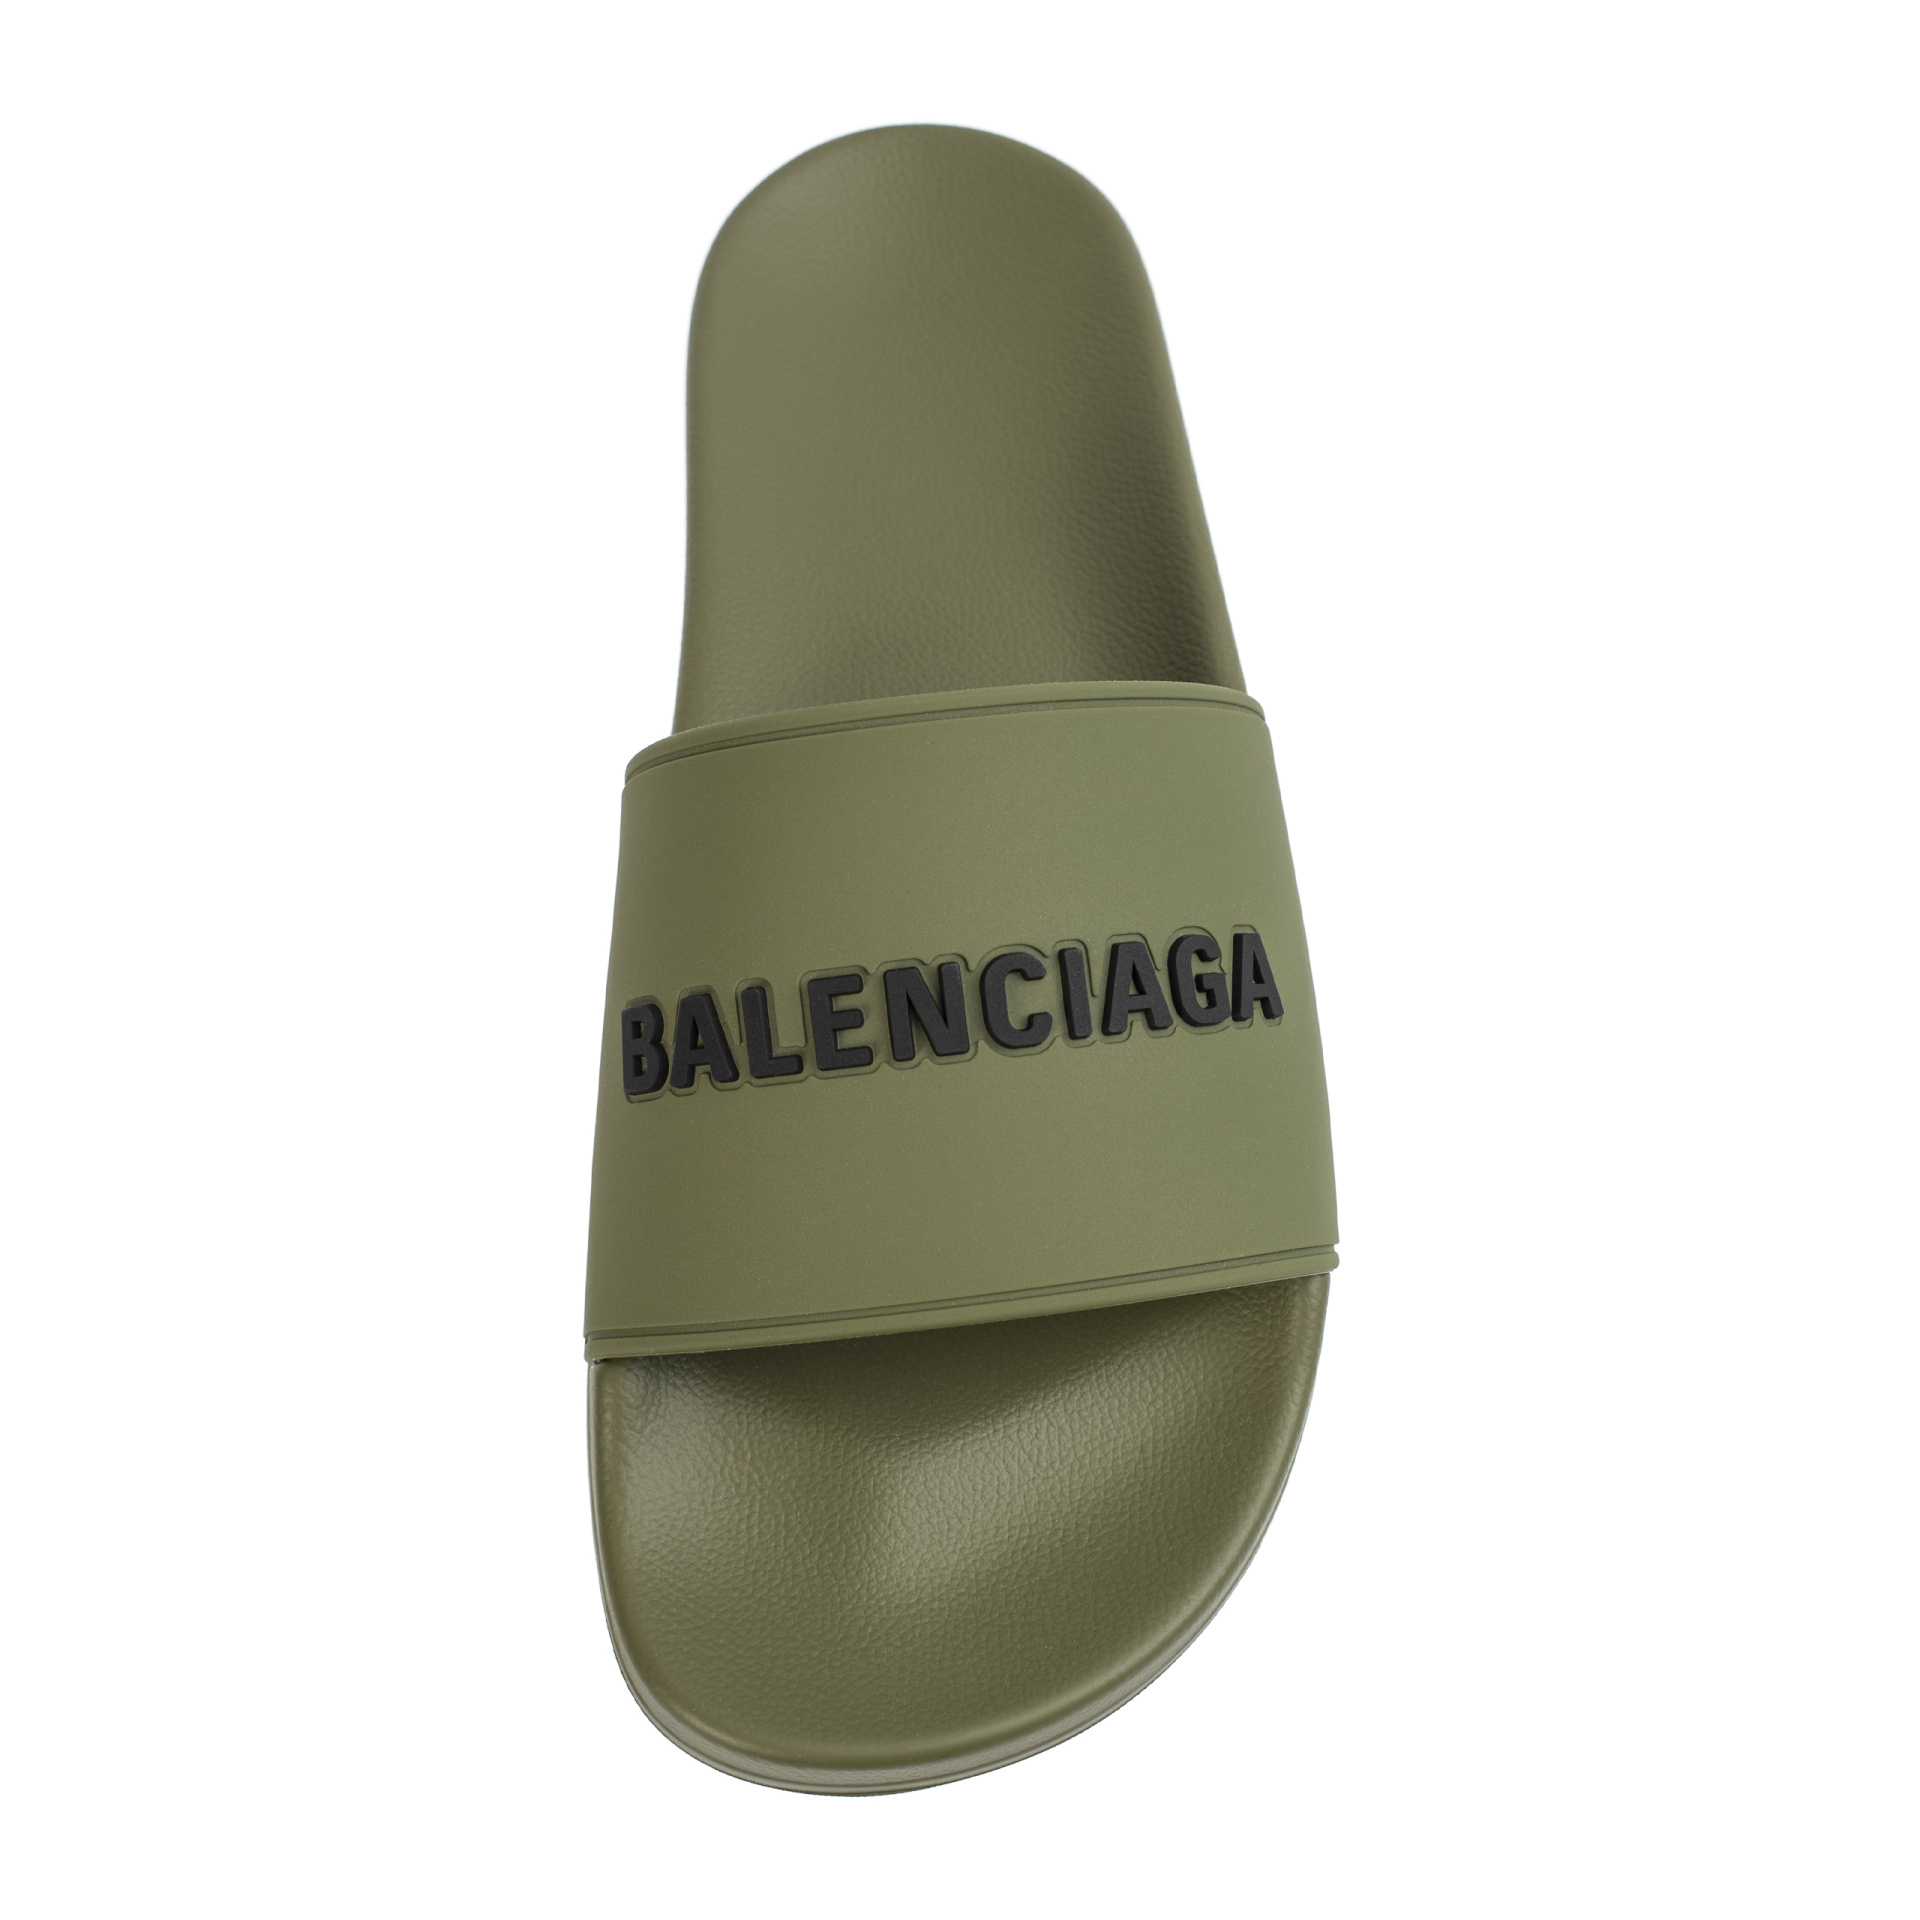 Хаки резина. Резиновые шлепанцы Pool с логотипом - Balenciaga 565826/w1s80/3310. Balenciaga резиновые. Balenciaga резиновые сланцы. Резиновая обувь Balenciaga.